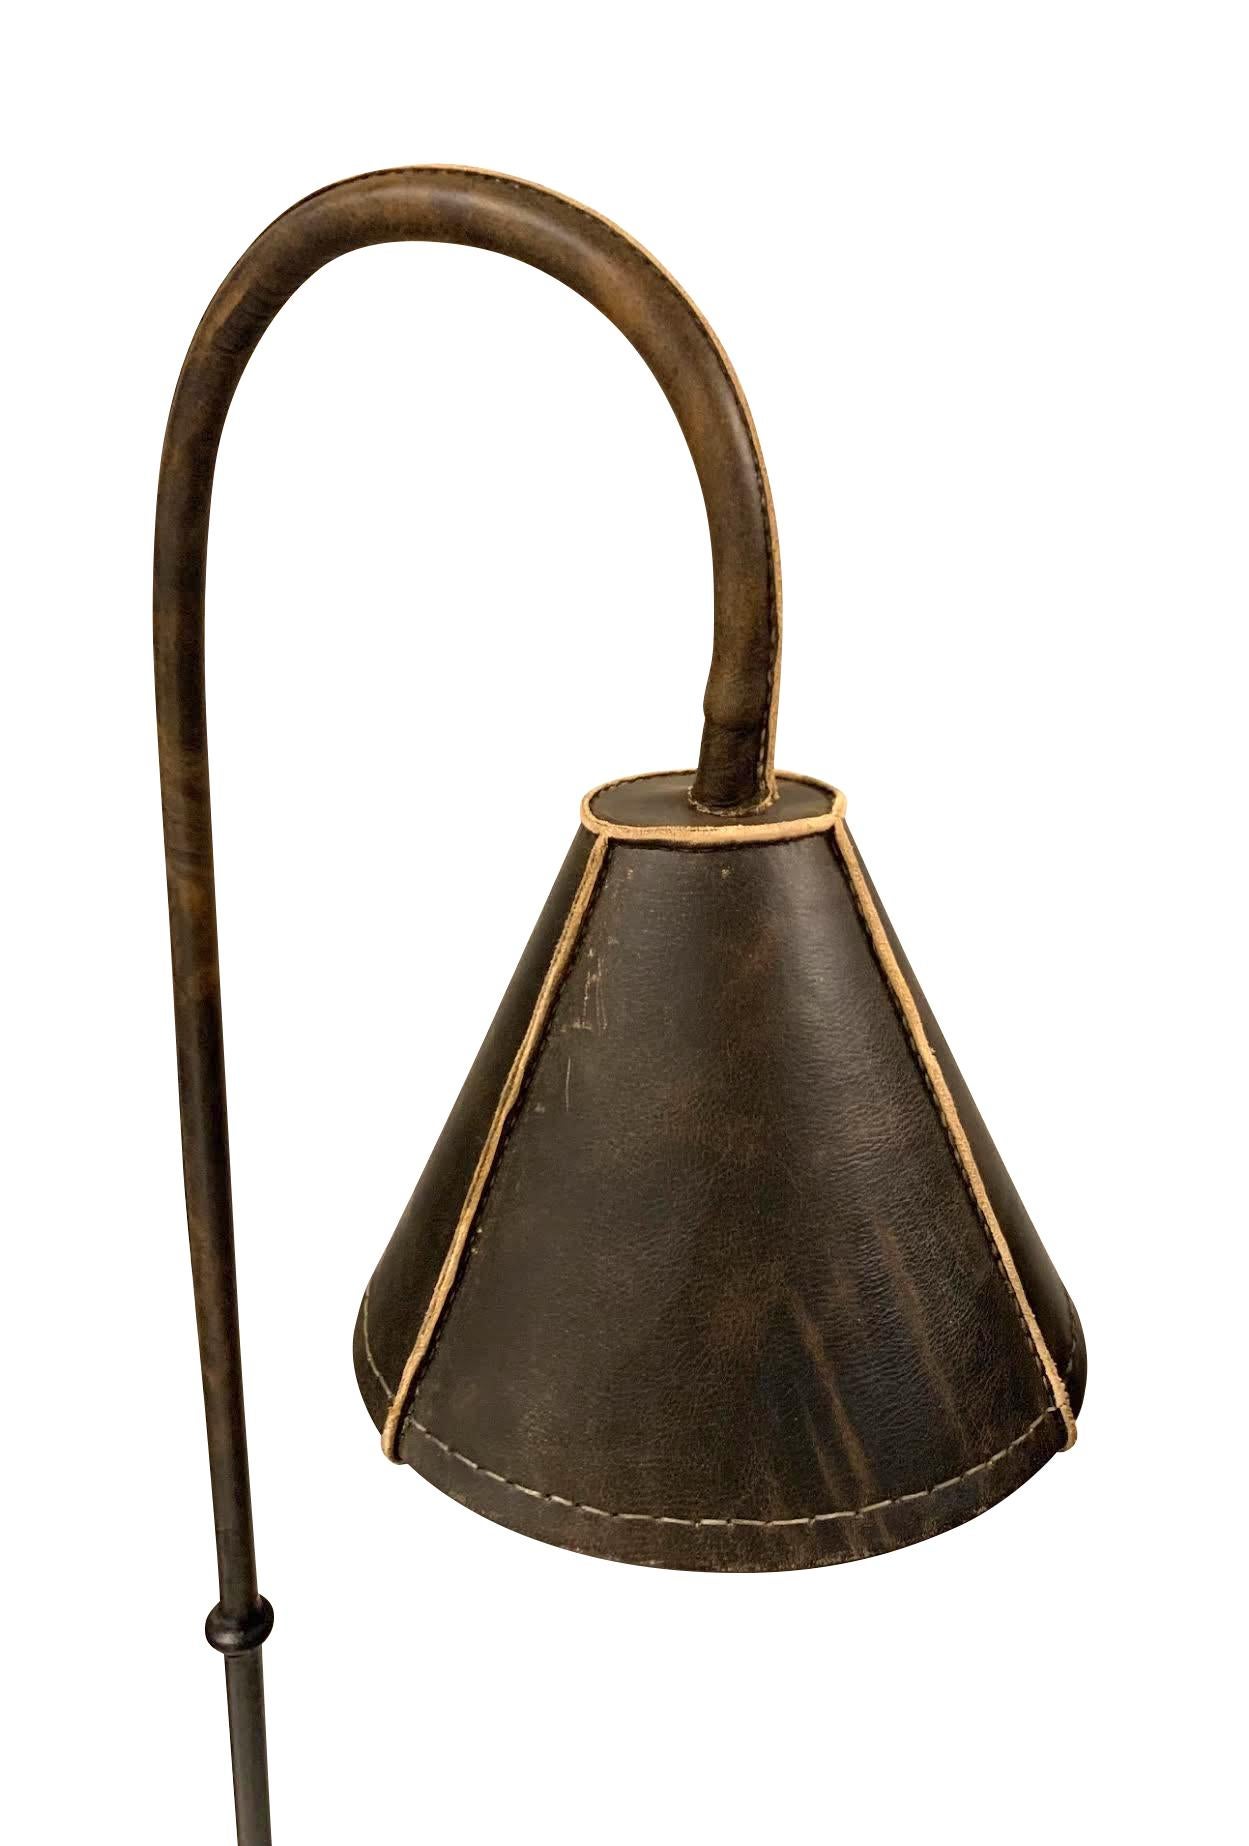 Lampadaire espagnol du milieu du siècle, entièrement en cuir brun, conçu par Valenti.
L'abat-jour, le poteau et la base du sol sont tous recouverts de cuir brun.
L'abat-jour s'adapte à la lumière directe.
Également disponible en noir (L1119) et en